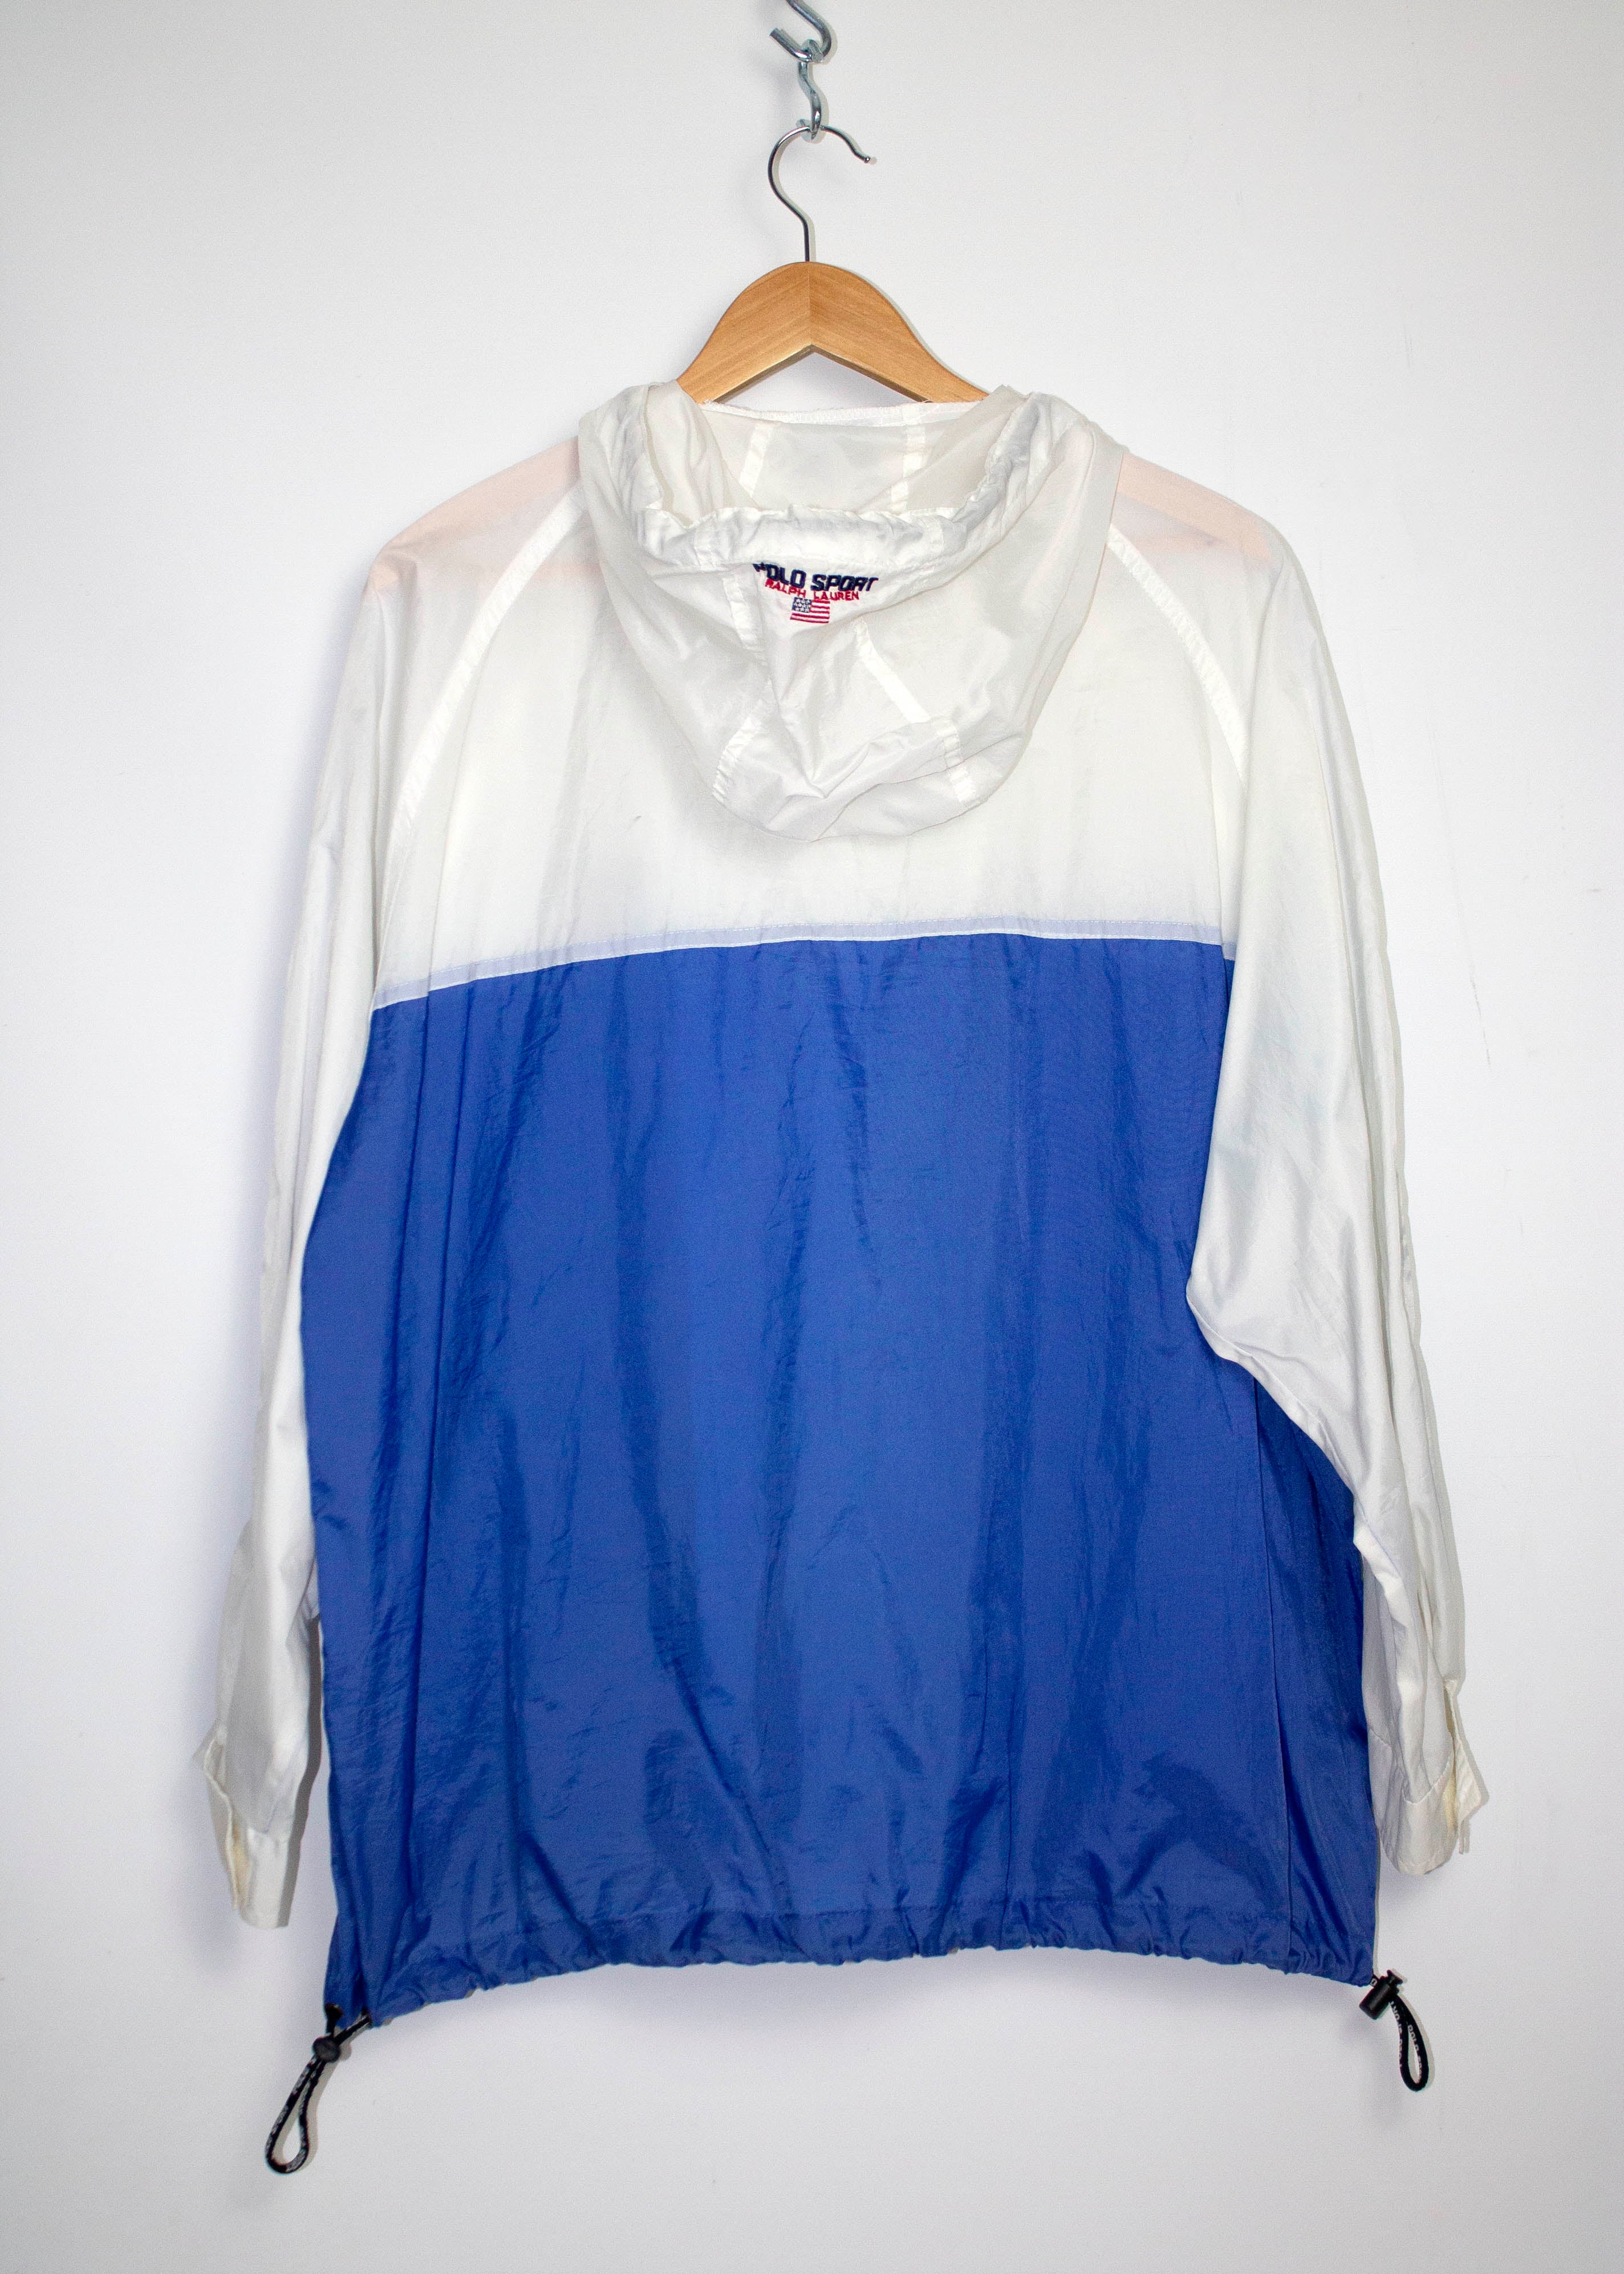 Vintage Polo Sport Ralph Lauren Hooded Windbreaker Jacket Sz L